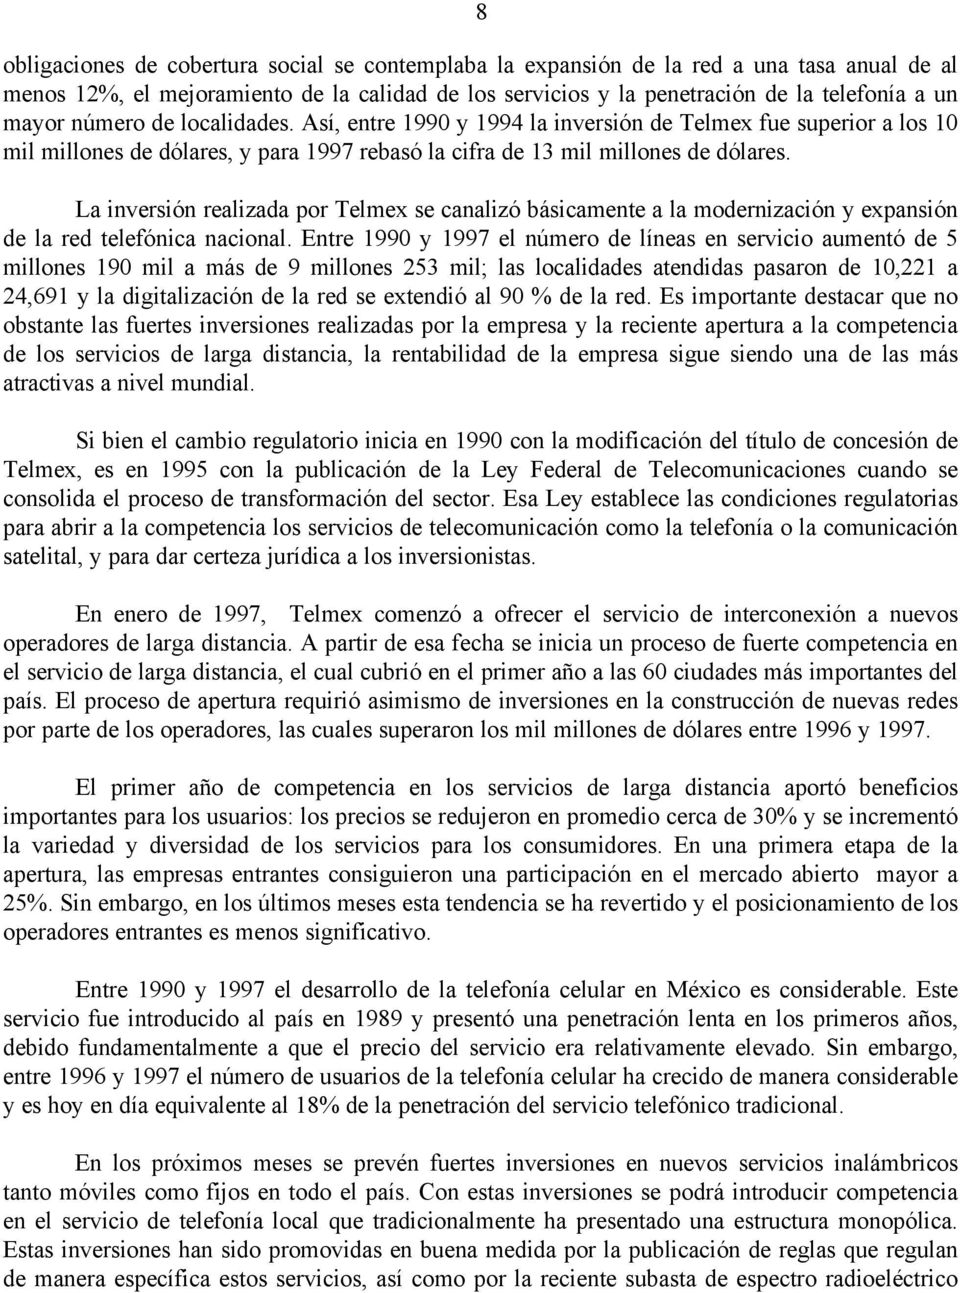 La inversión realizada por Telmex se canalizó básicamente a la modernización y expansión de la red telefónica nacional.